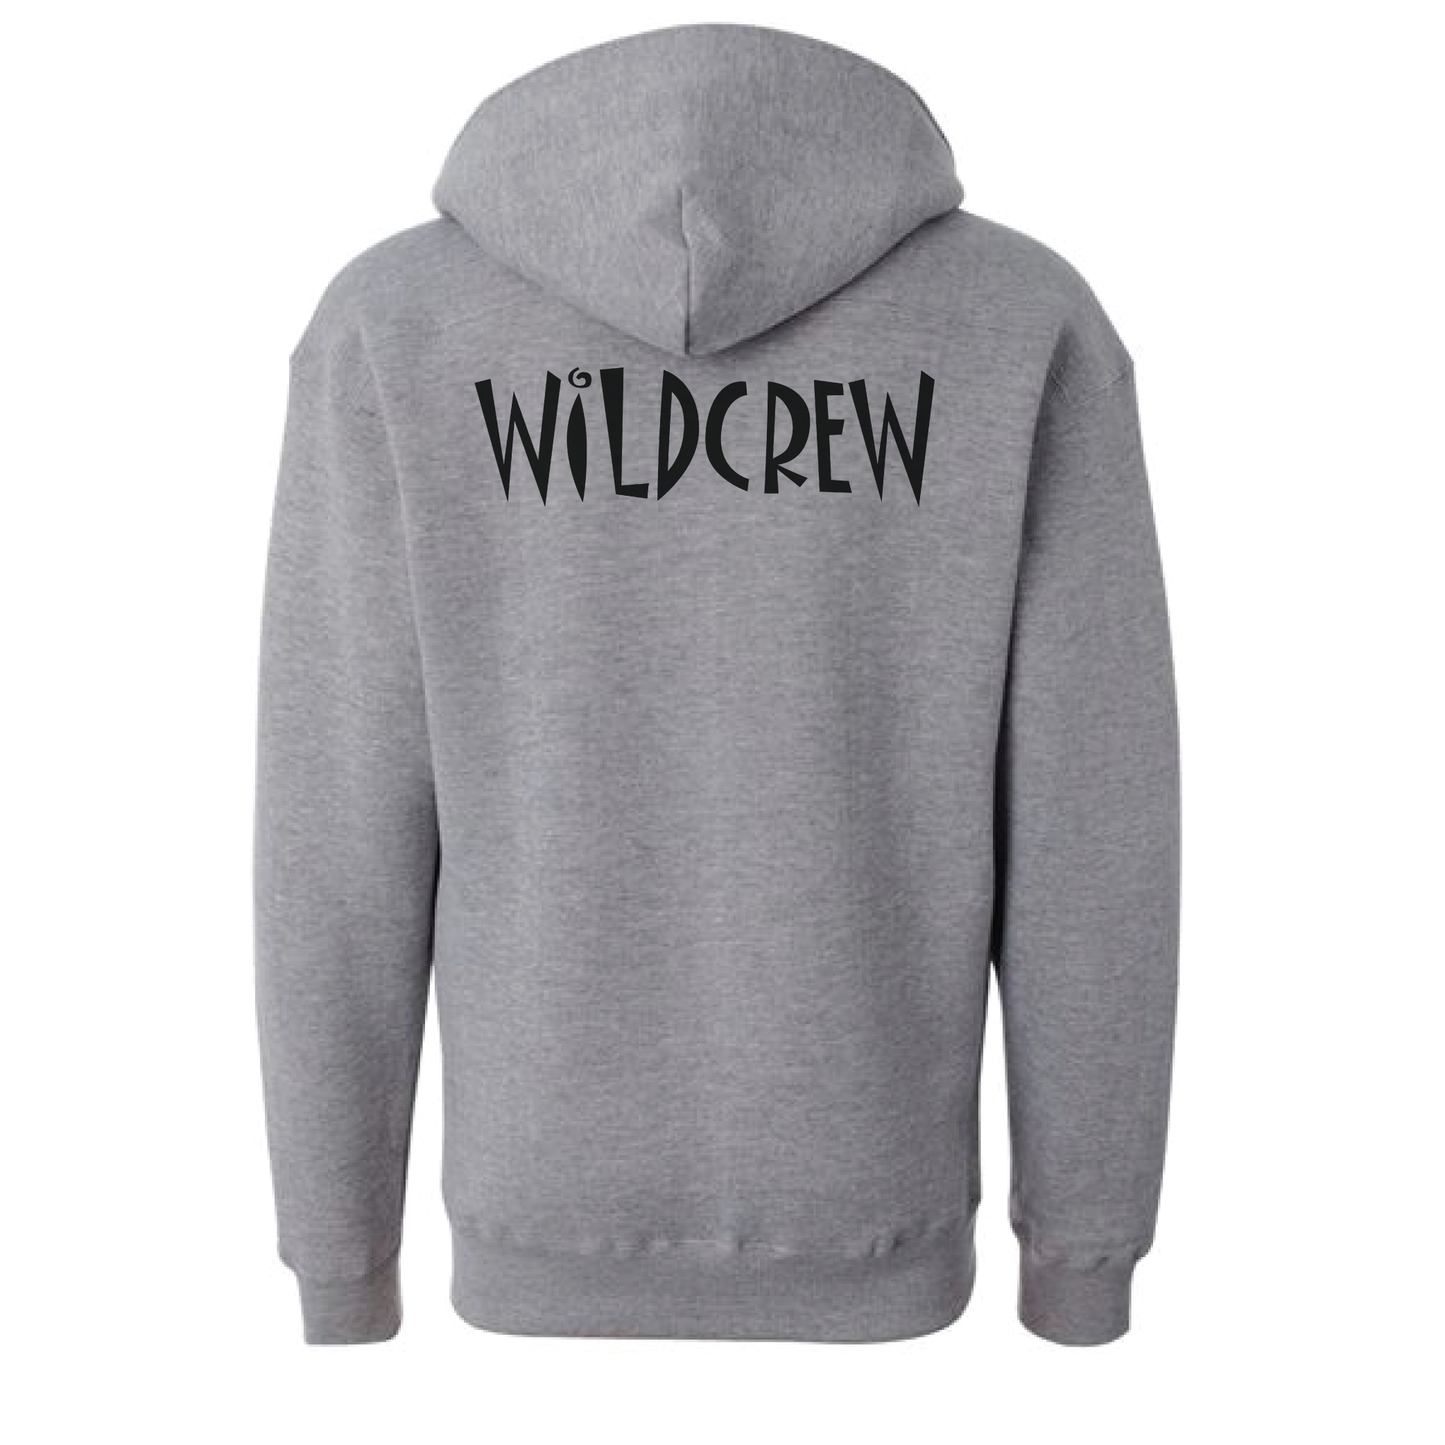 Wildwood Lace Hooded Sweatshirt